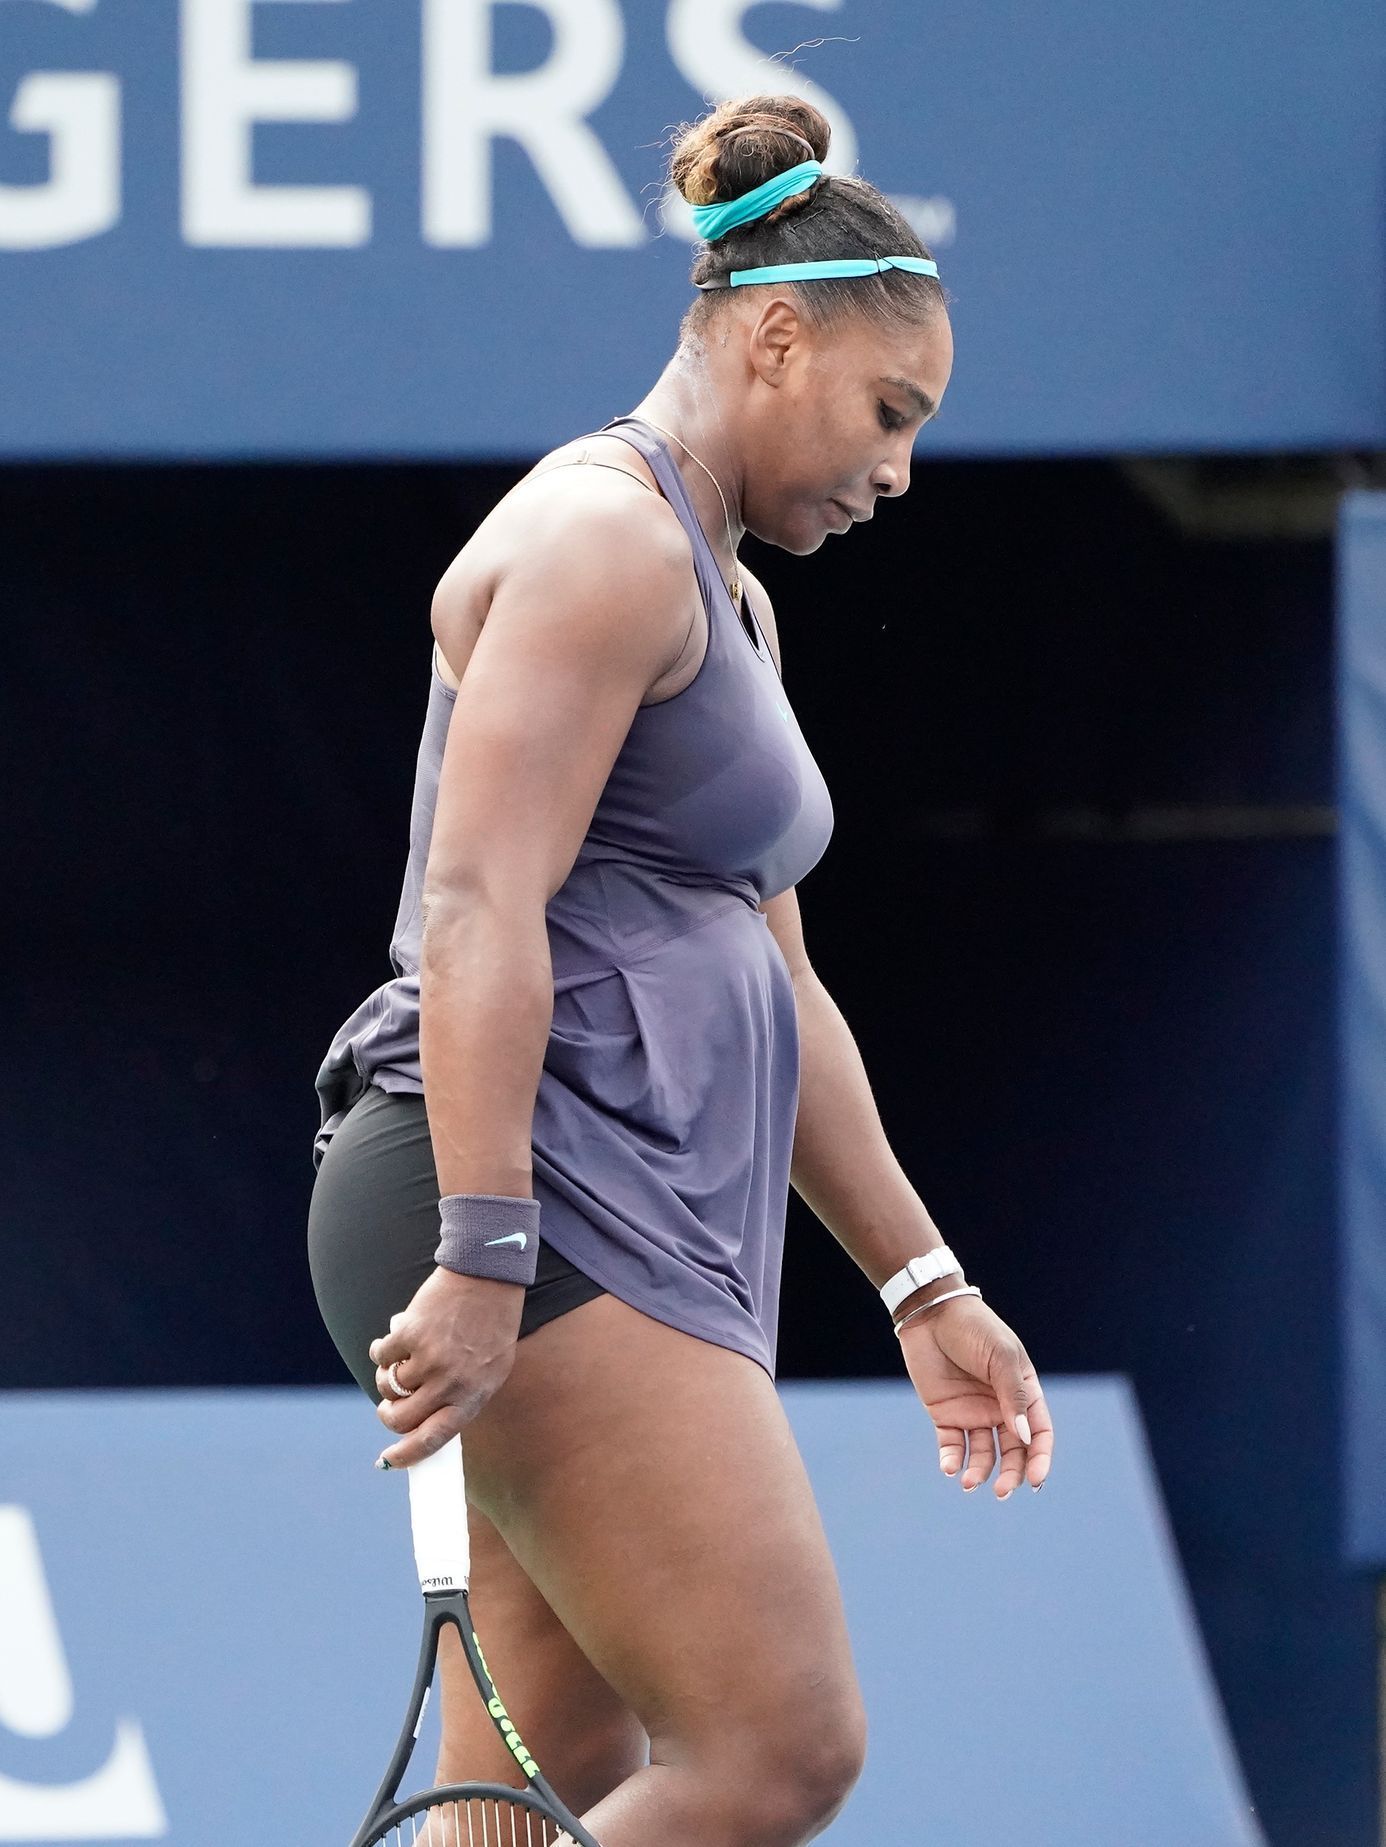 Serena Williamsová ve finálovém utkání na turnaji v Torontu, který musela vzdát kvůli bolestem zad